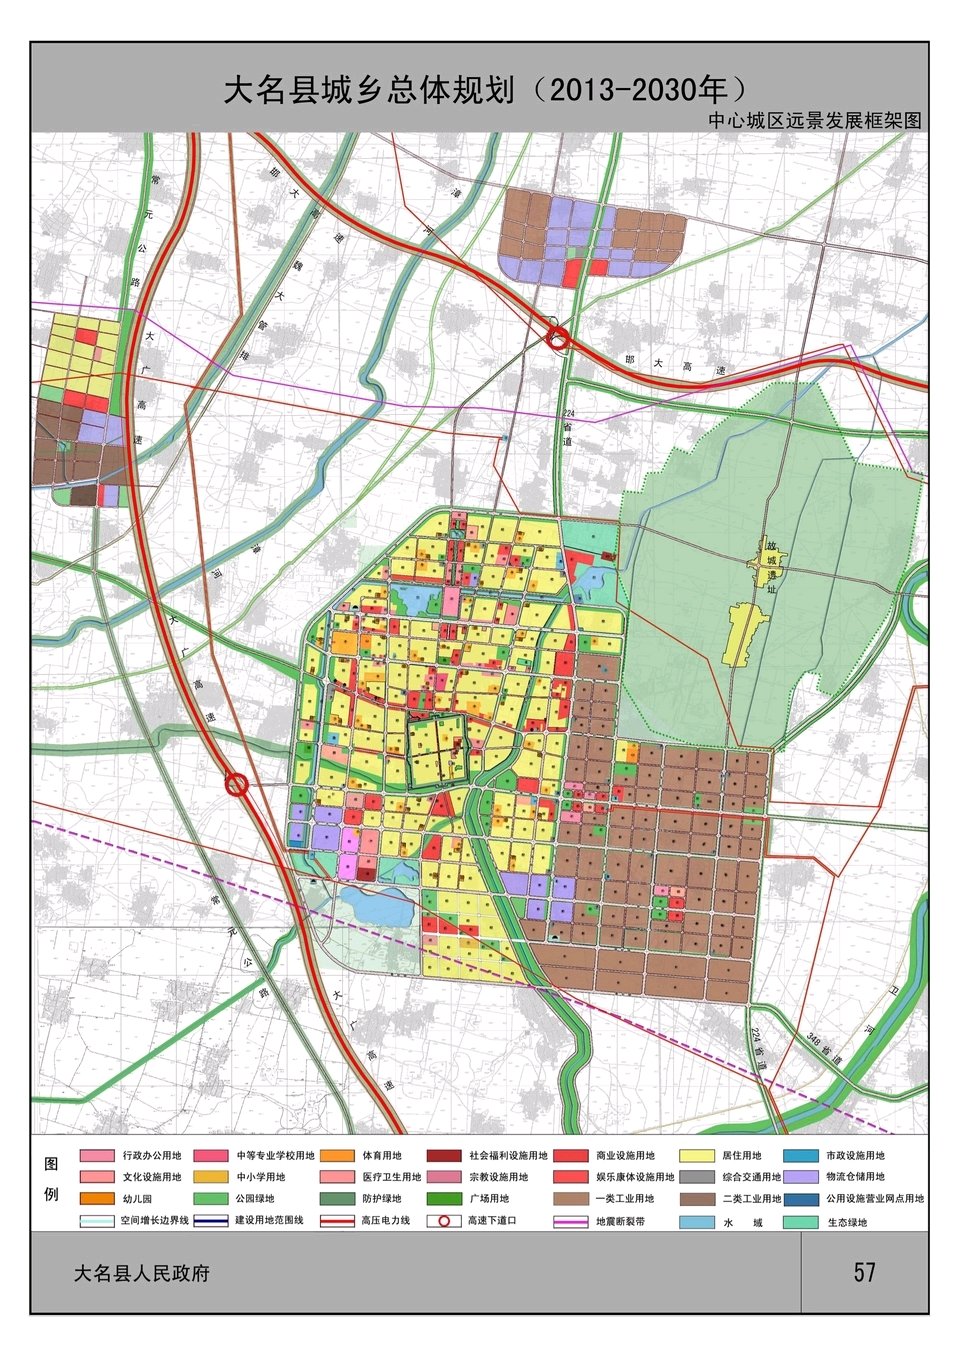 生活 正文  在网上看到了大名县城乡总体规划(20年-2030年)图中中心